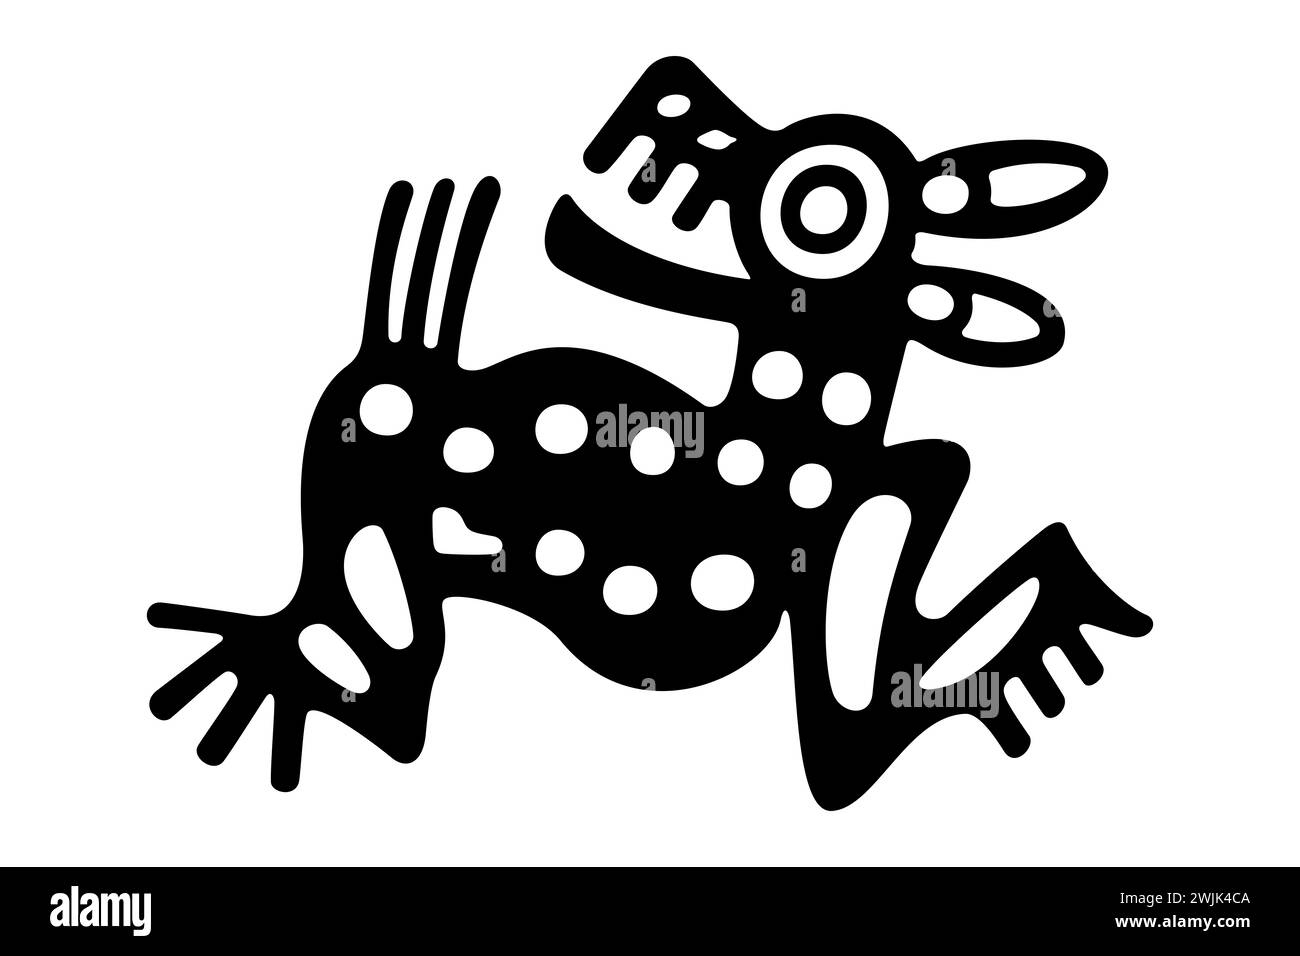 Hirschsymbol des alten Mexiko. Aztekische Tonstempelmotiv mit einem Mazatl, wie es im präkolumbianischen Veracruz gefunden wurde. 7. Tag Zeichen des aztekischen Kalenders. Stockfoto